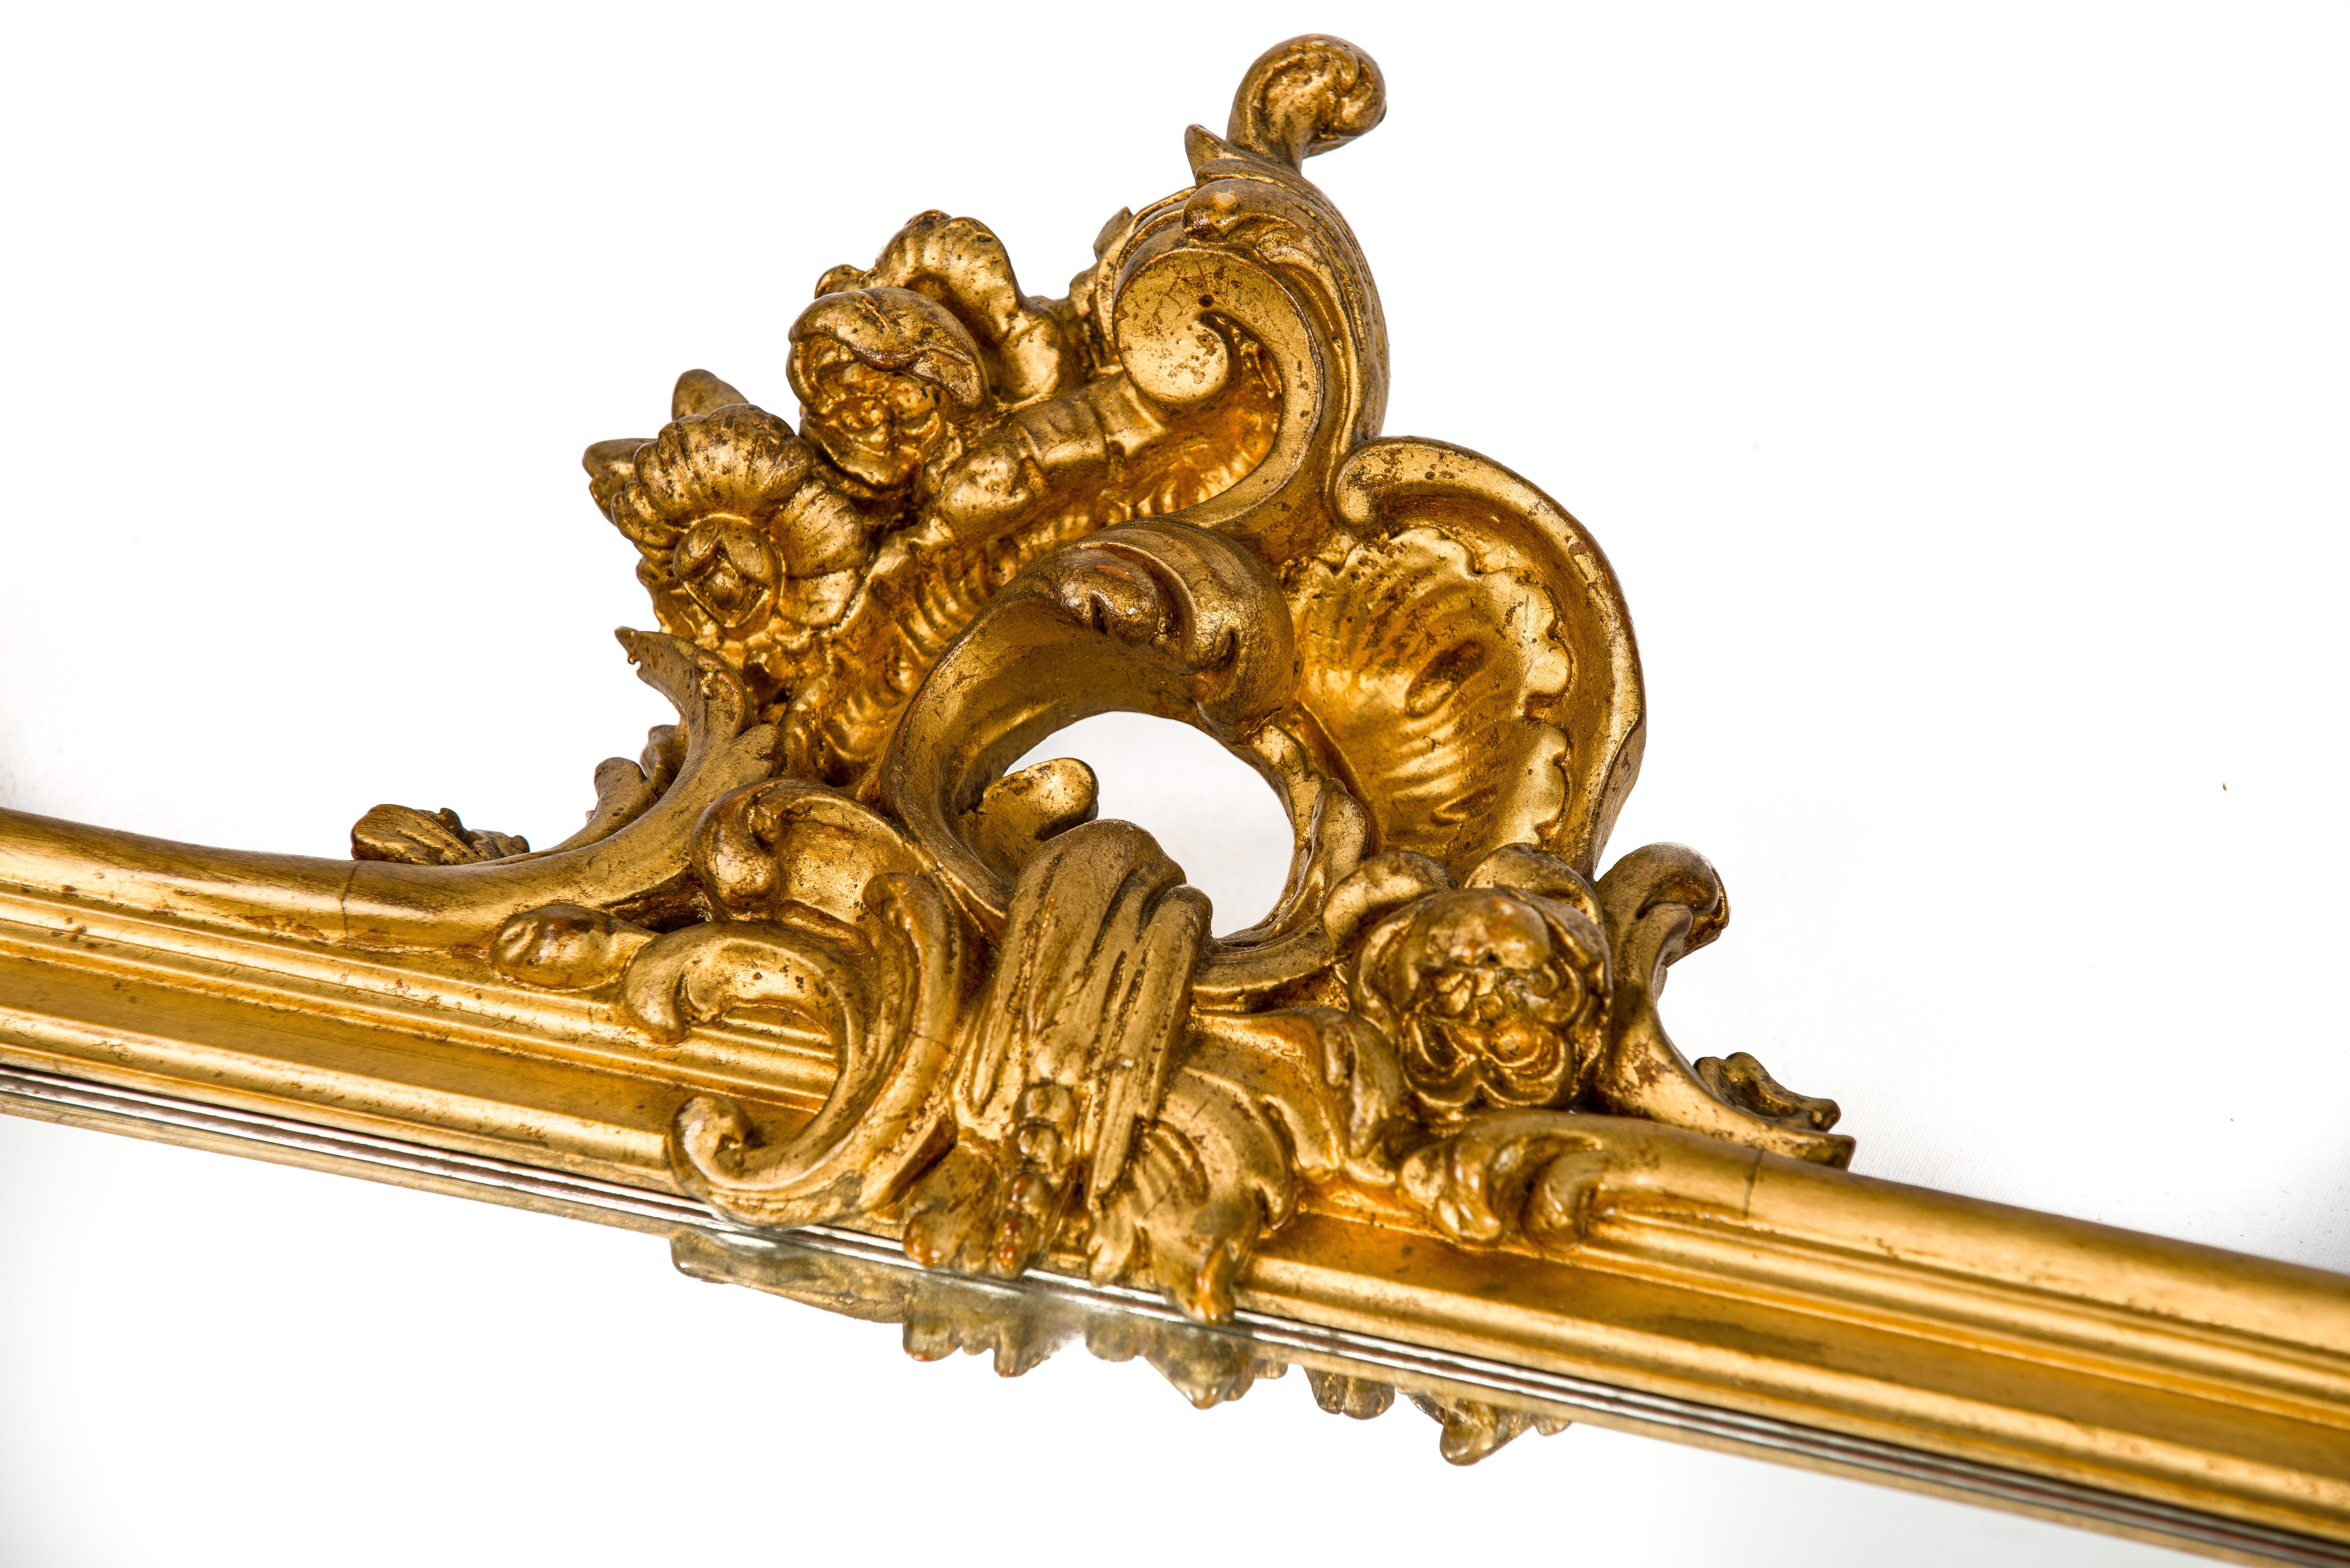 Ce beau miroir rectangulaire doré est fabriqué en France, vers 1870.
Le cadre est décoré d'ornements baroques très détaillés tels que des volutes de C, des acanthes, des fleurs et des feuilles. Le cadre a une base en pin lissée au gesso et est